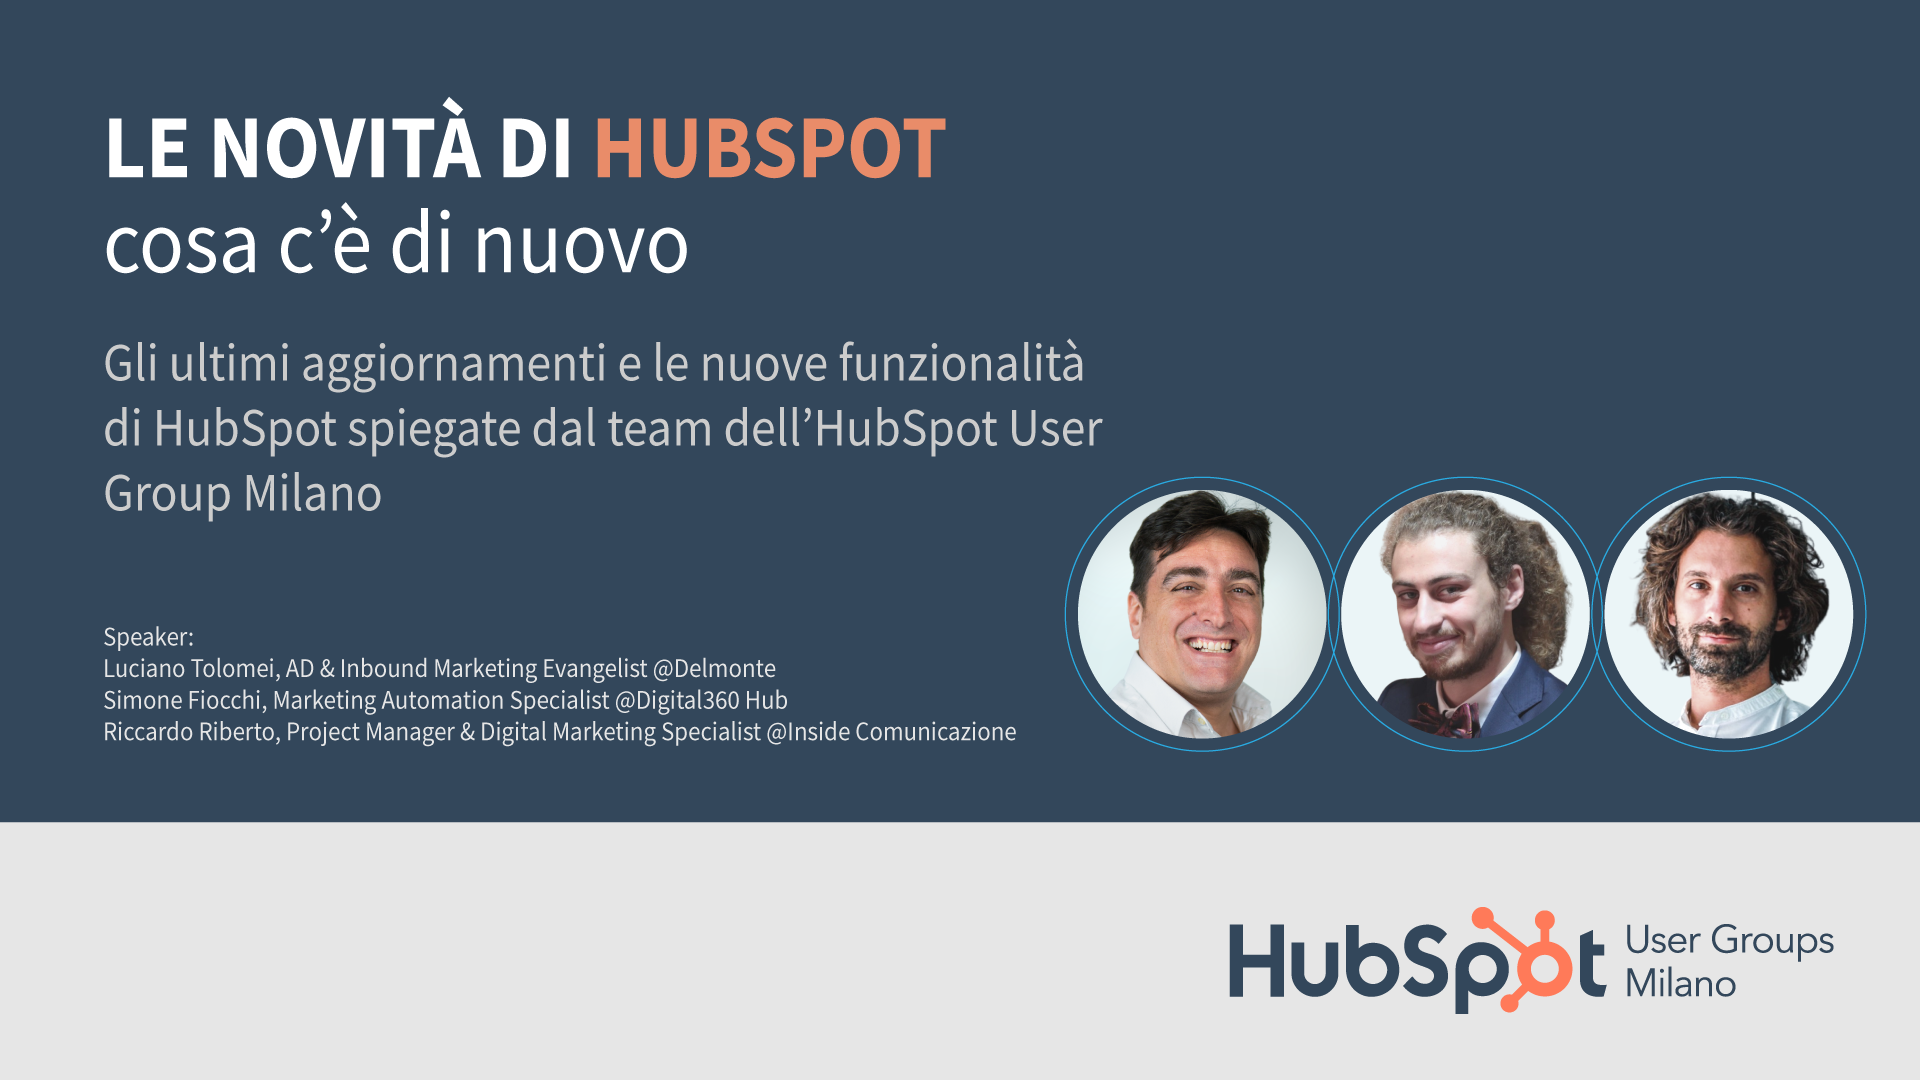 Le novità di HubSpot: cosa c'è di nuovo